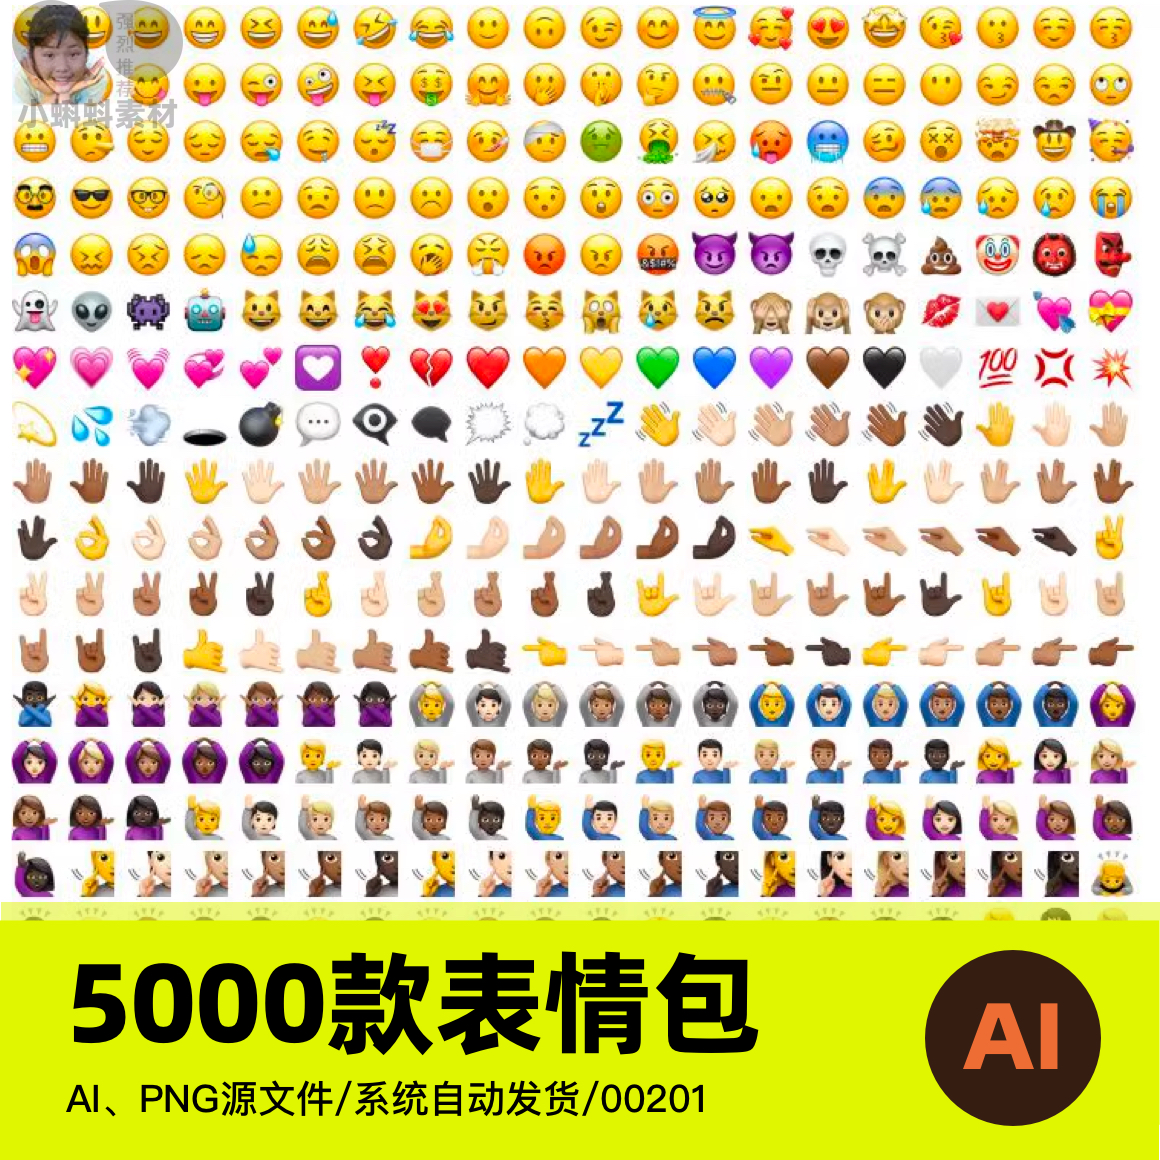 小黄人心情黄脸表情包ios系统UI设计Emoji矢量AI设计素材png图片